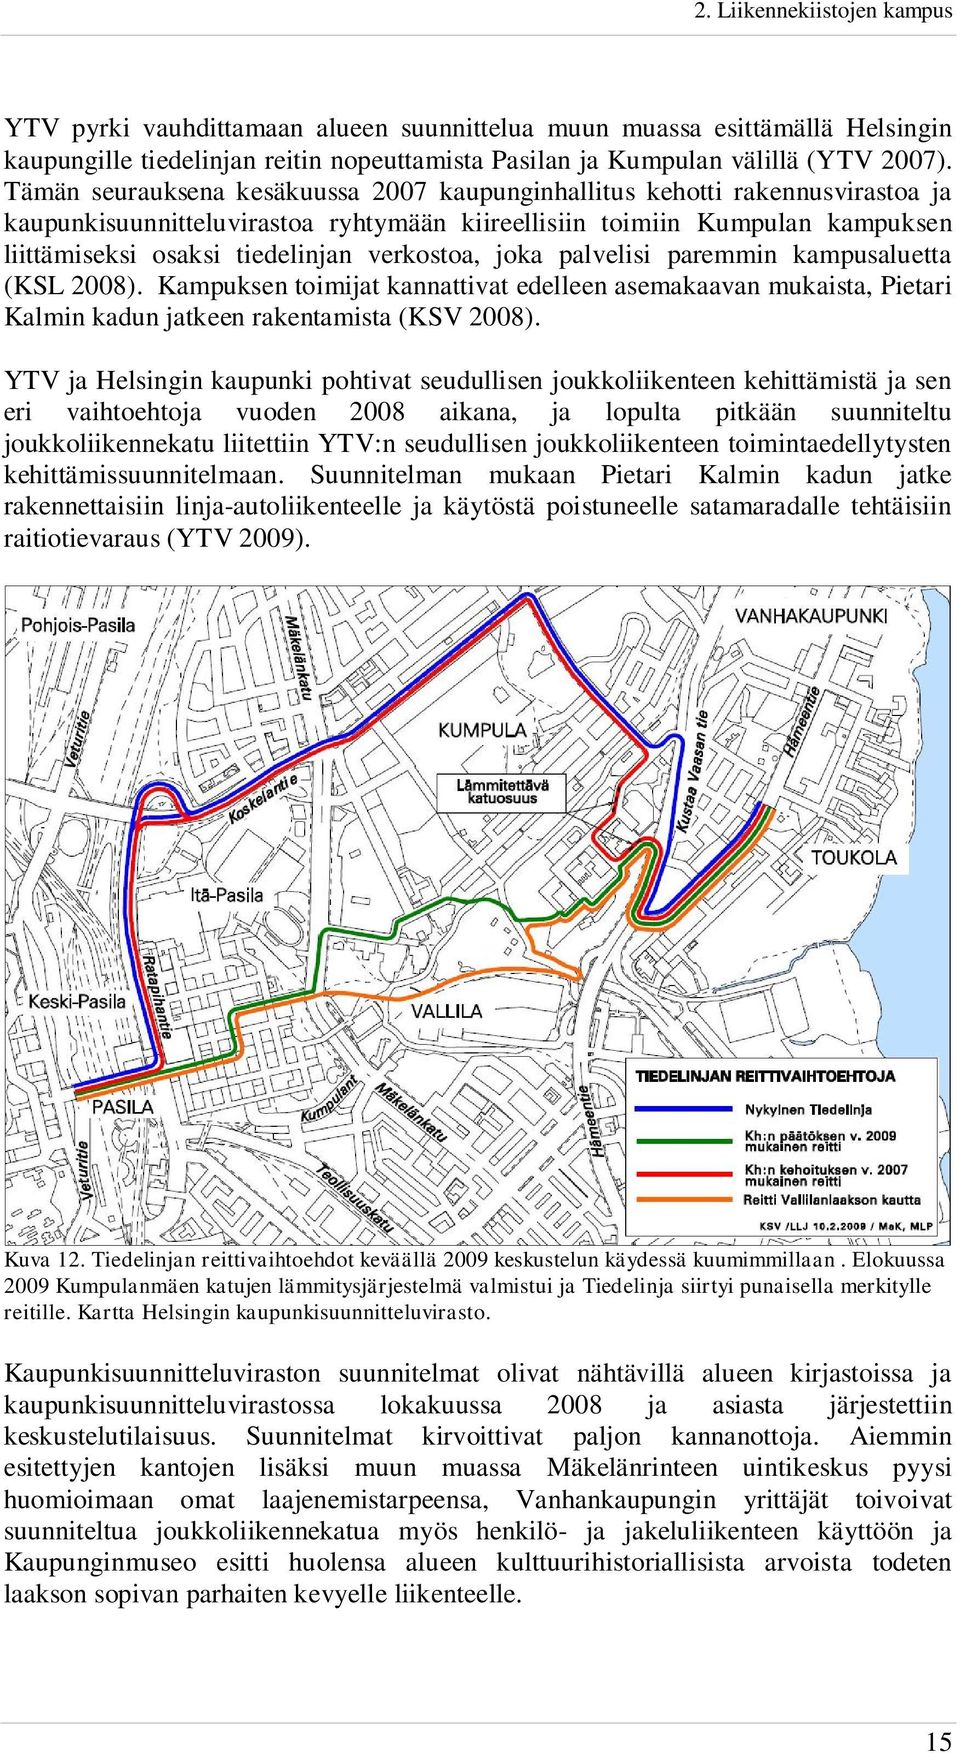 verkostoa, joka palvelisi paremmin kampusaluetta (KSL 2008). Kampuksen toimijat kannattivat edelleen asemakaavan mukaista, Pietari Kalmin kadun jatkeen rakentamista (KSV 2008).